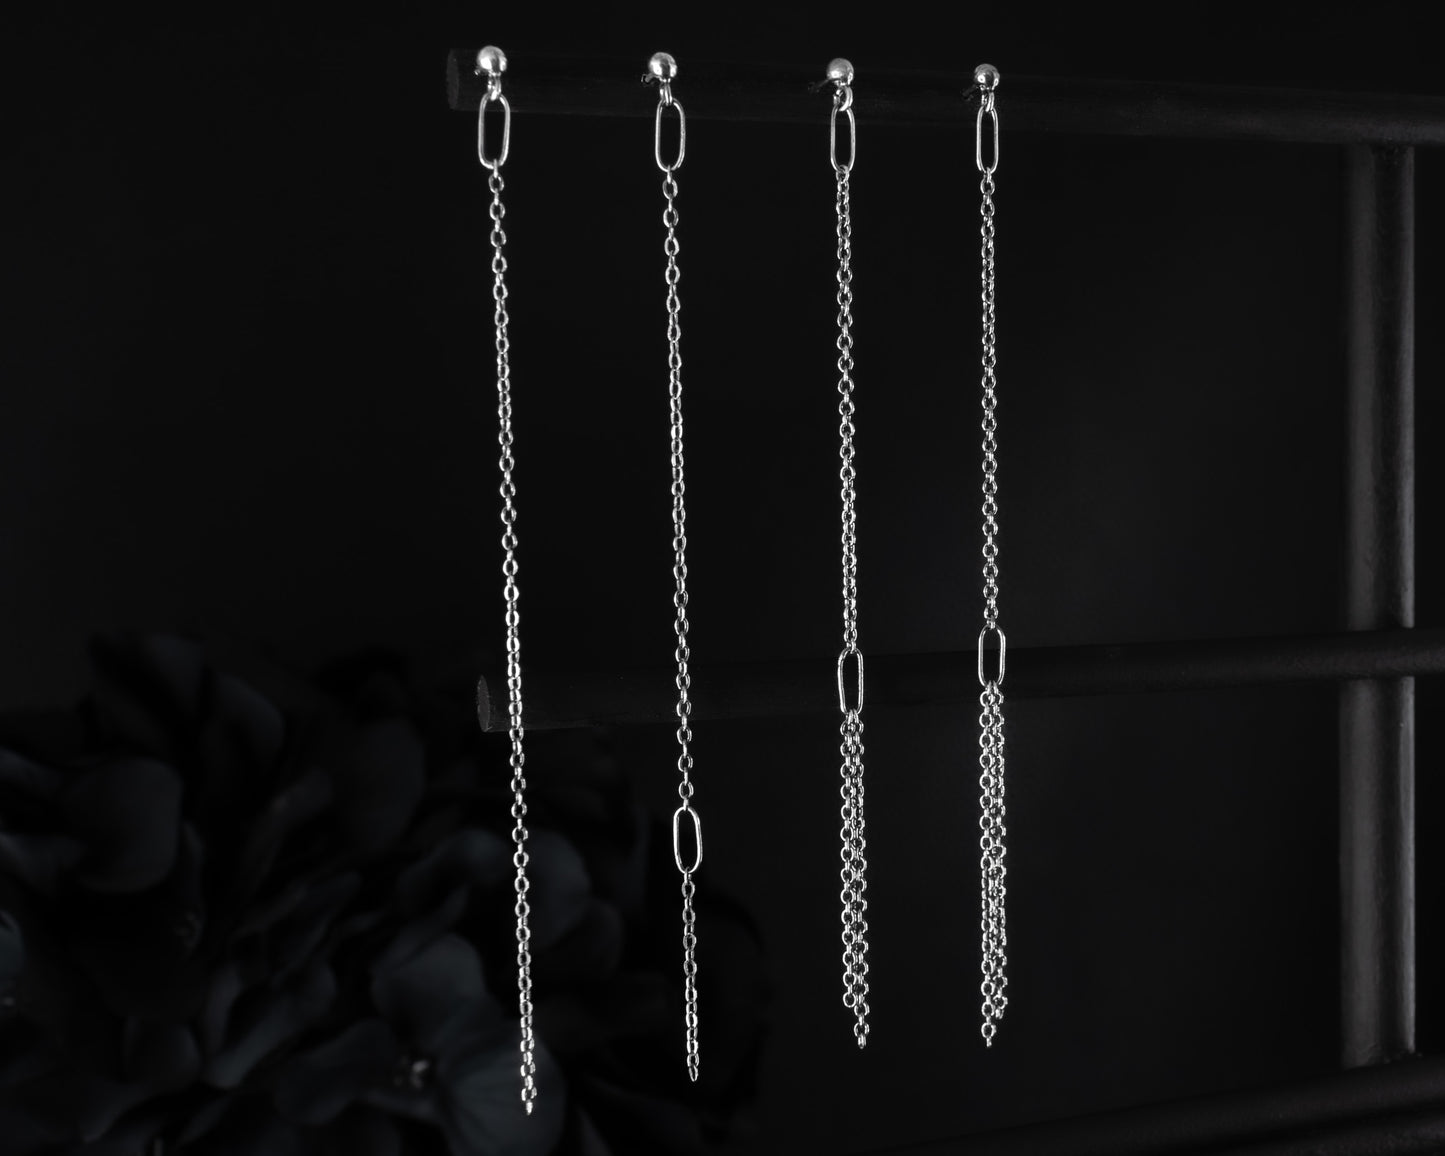 EKRJ616  Thin chain long drop handmade silver earrings